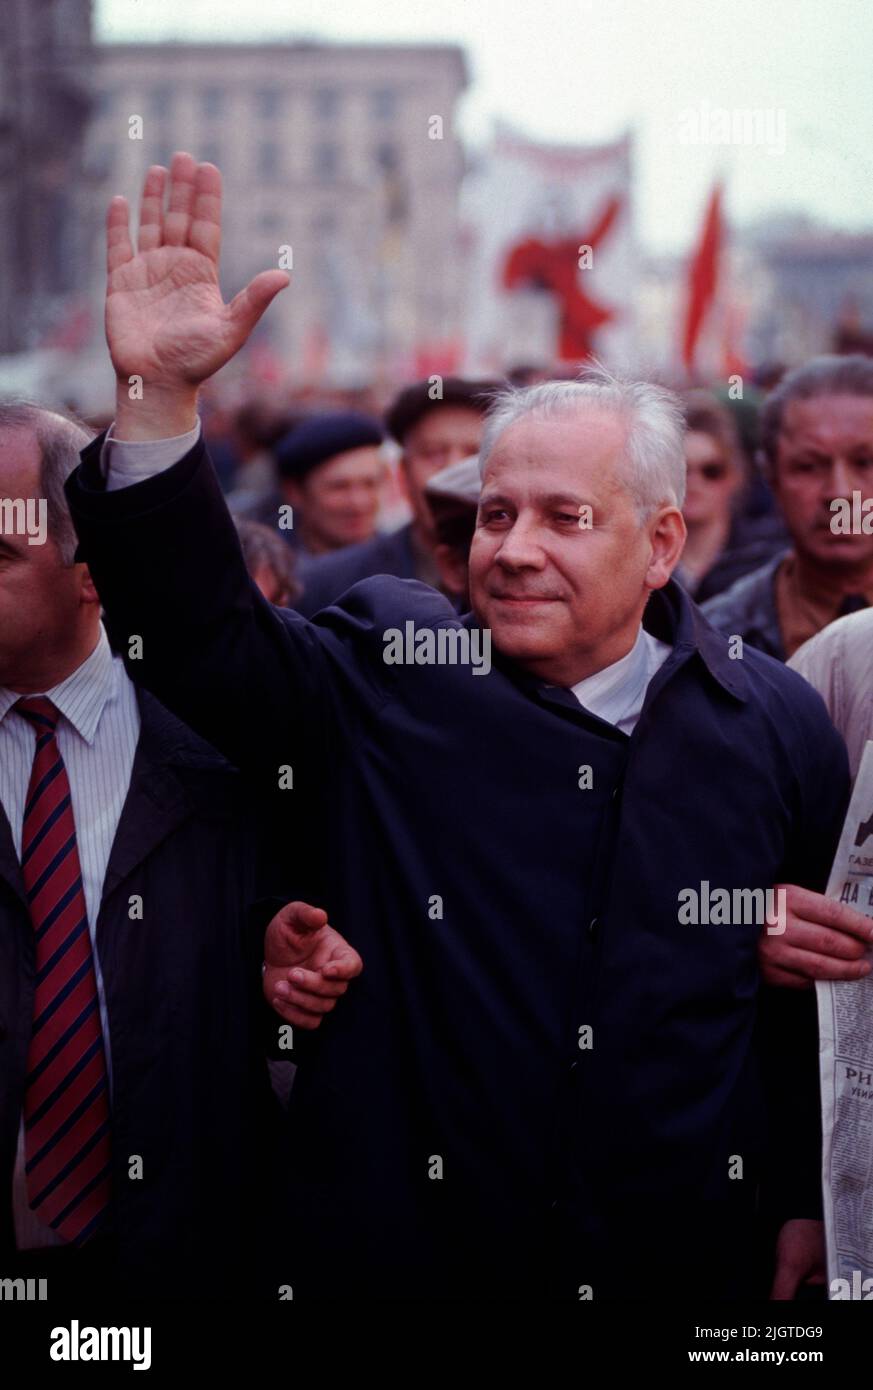 Anatoly Ivanovich Lukyanov ( Анатолий Иванович Лукьянов, 1930 – 2019) Lukyanov se reúne durante una manifestación pro-comunista contra Yeltsin en el centro de Moscú, Rusia, el 1992 de abril. Fue Presidente del Soviet Supremo de la URSS de 1990 a 1991 y fue uno de los fundadores del Partido Comunista de la Federación Rusa. Foto de stock